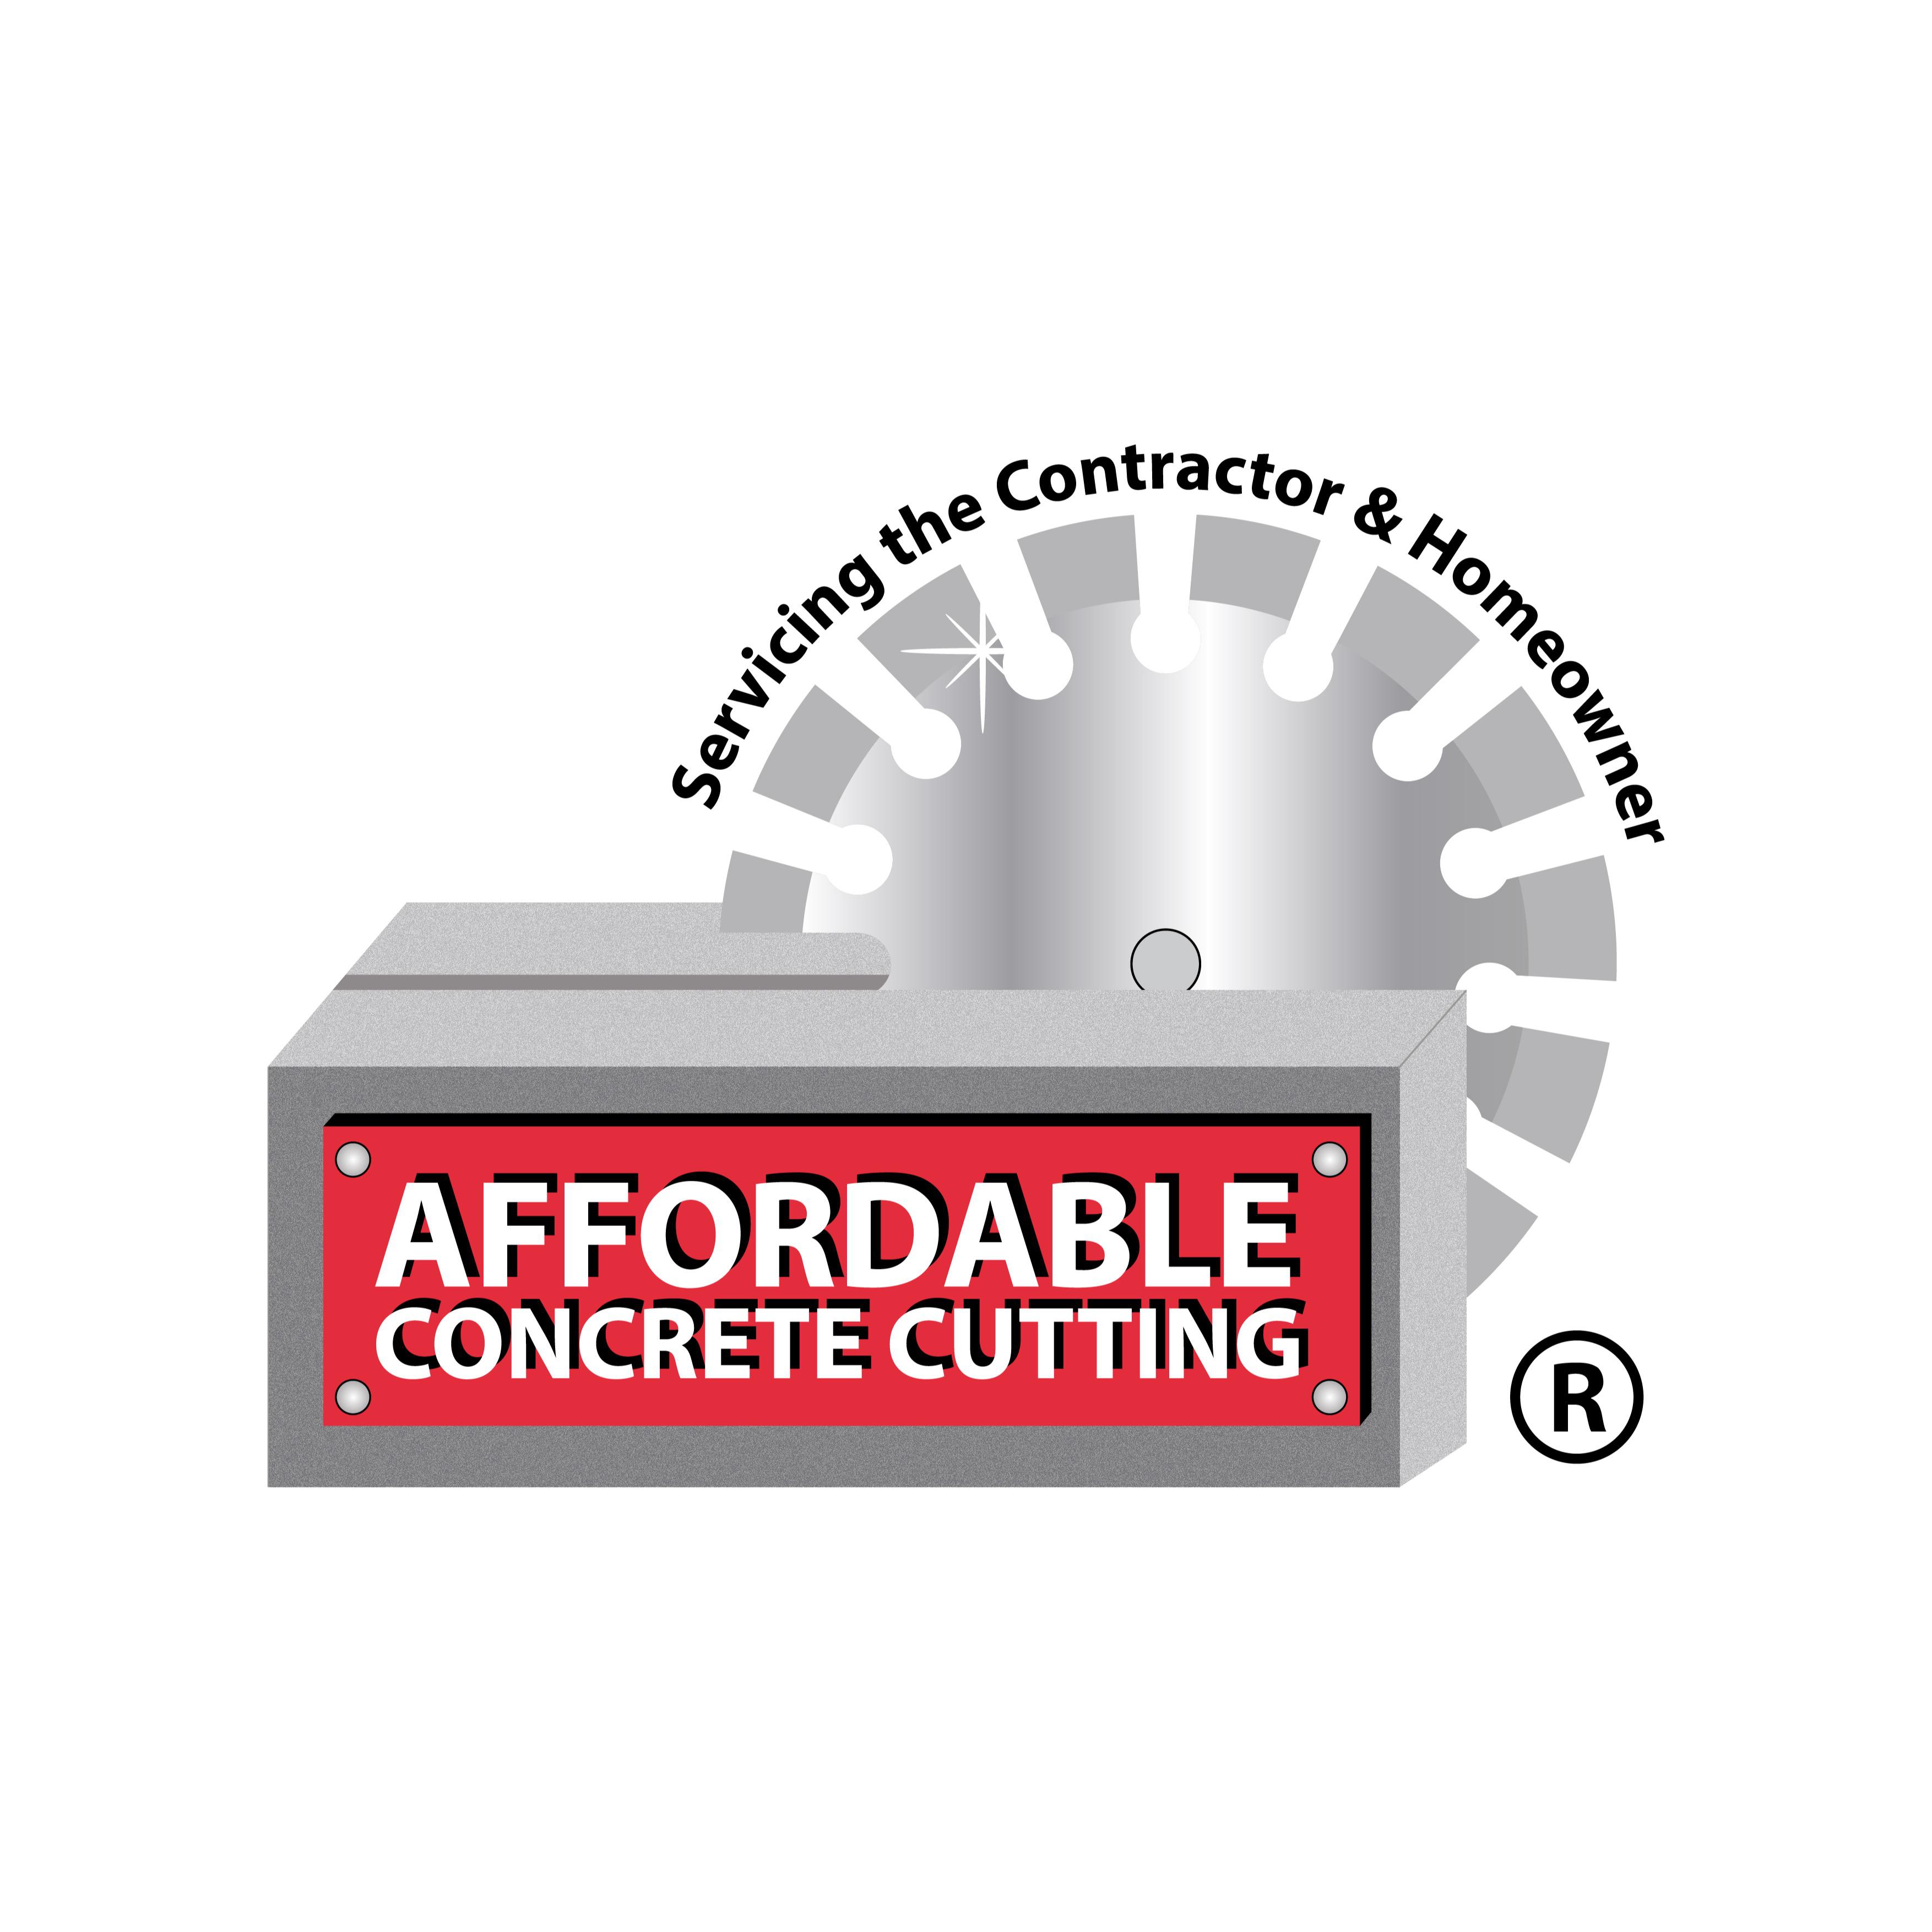 Affordable Concrete Cutting - Saugus, MA 01906 - (781)233-7717 | ShowMeLocal.com